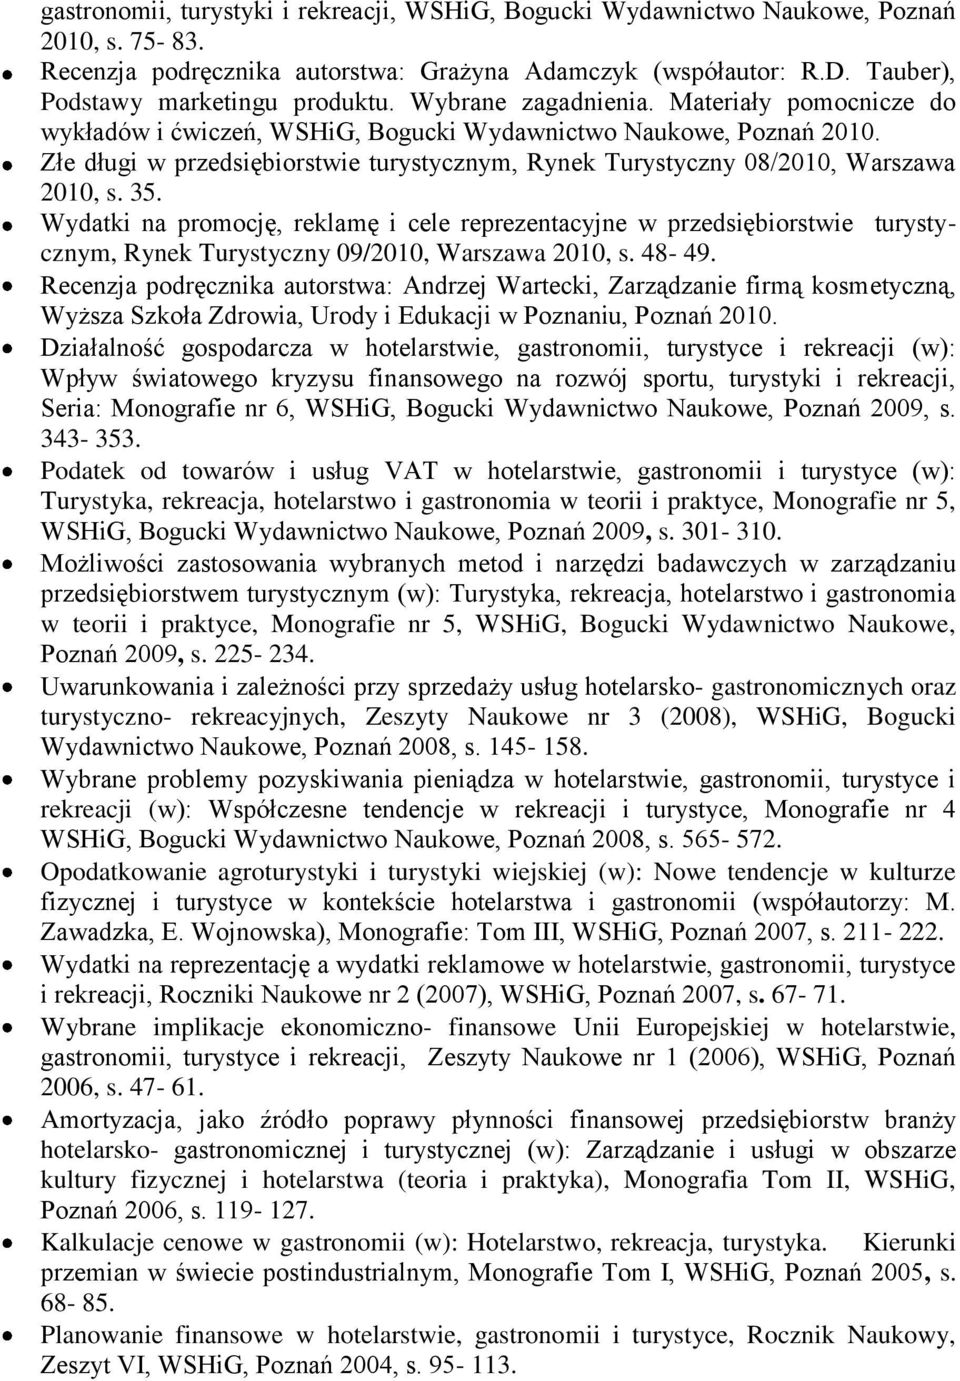 Złe długi w przedsiębiorstwie turystycznym, Rynek Turystyczny 08/2010, Warszawa 2010, s. 35.